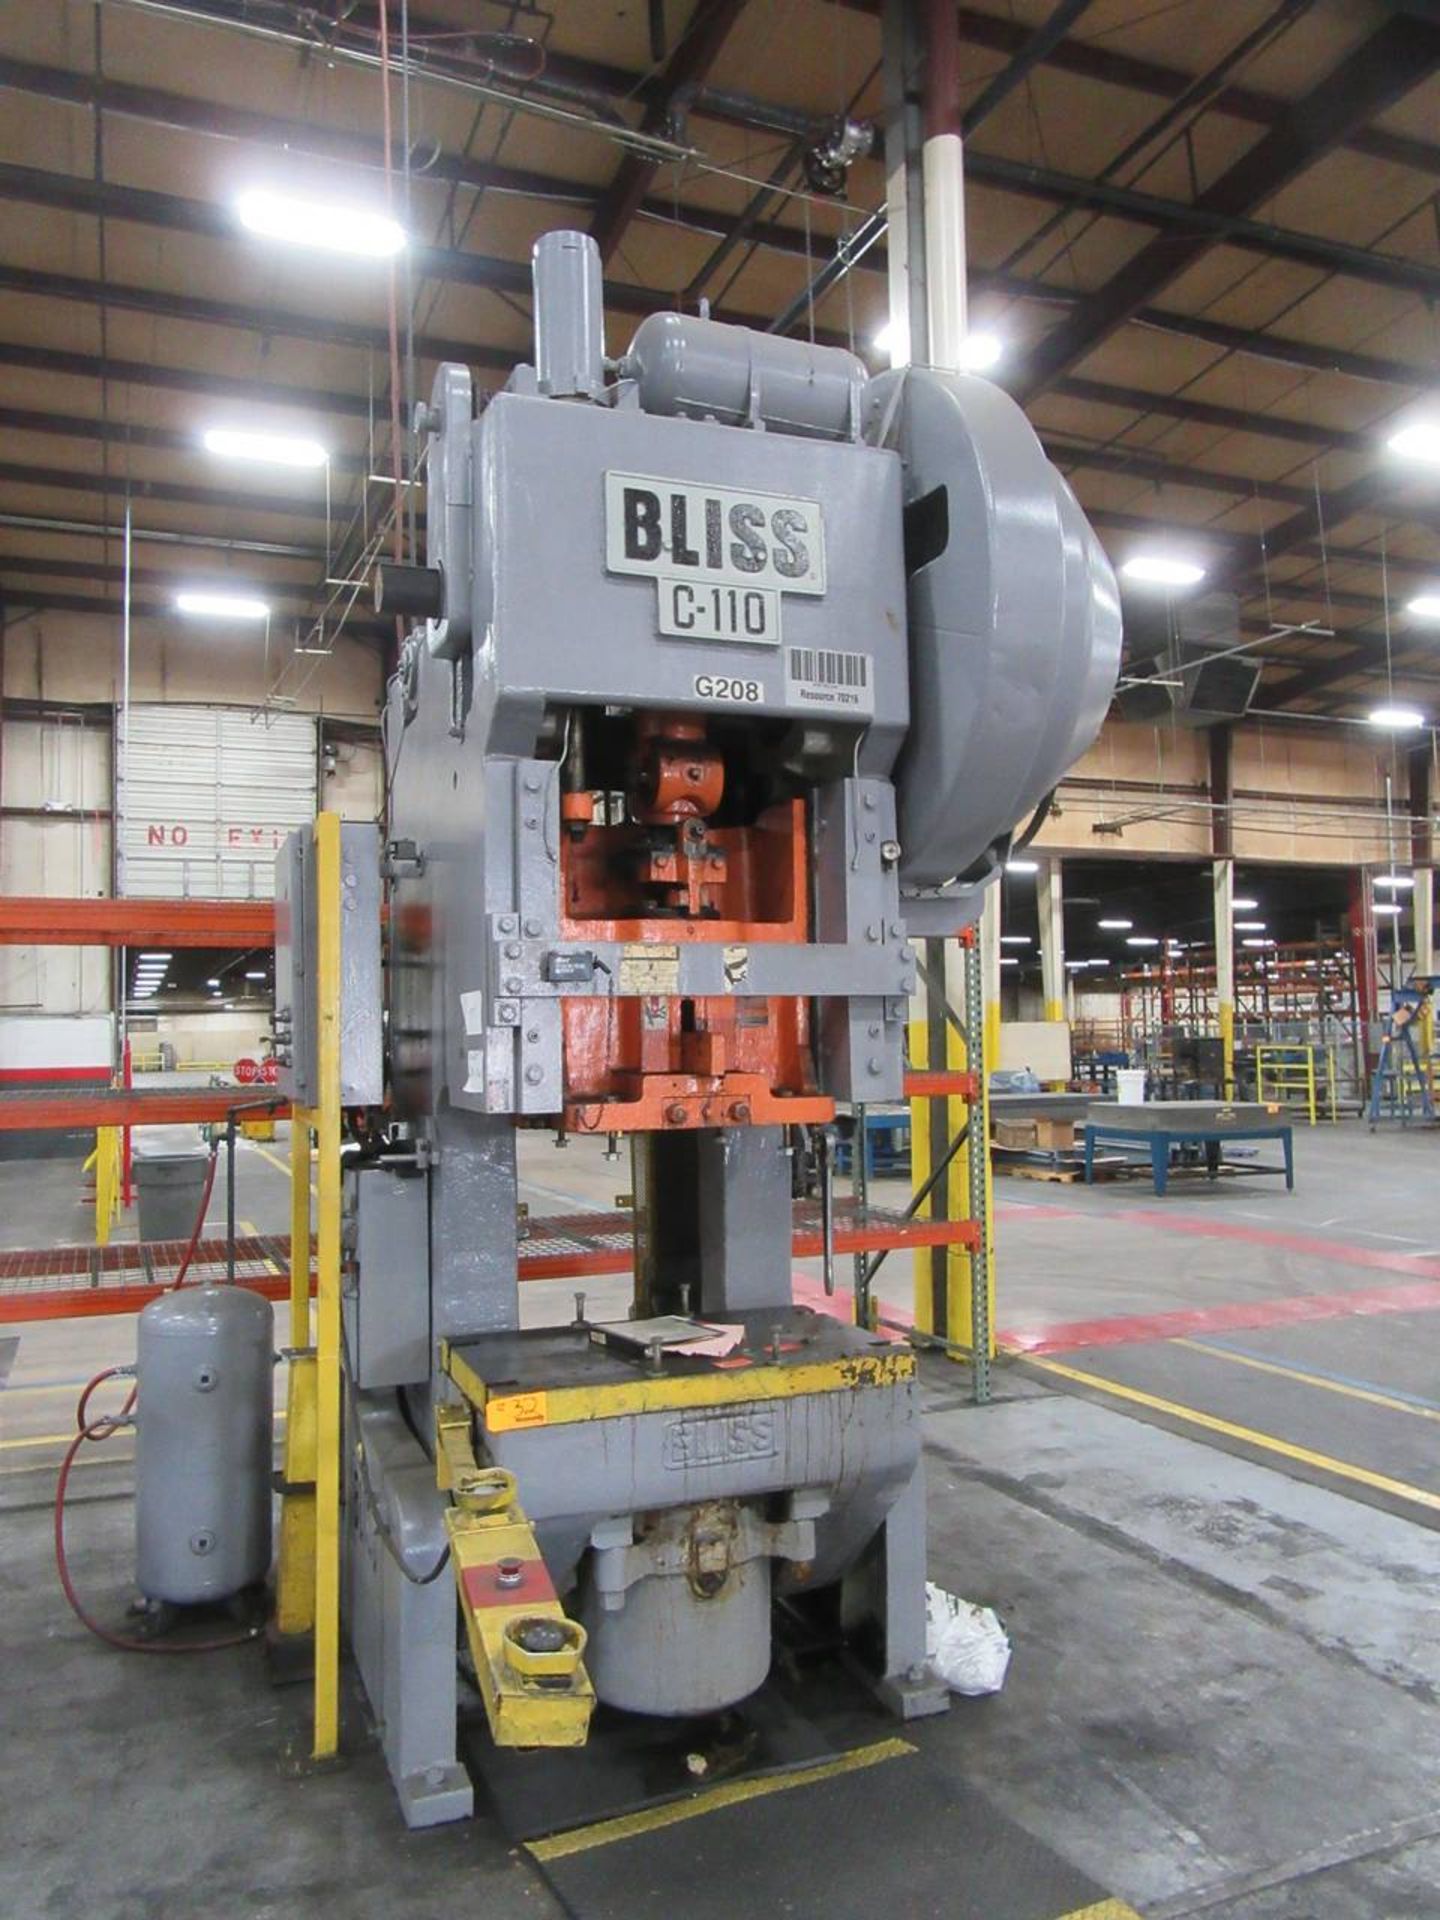 Bliss C-110 110 Ton OBI Press - Image 4 of 4